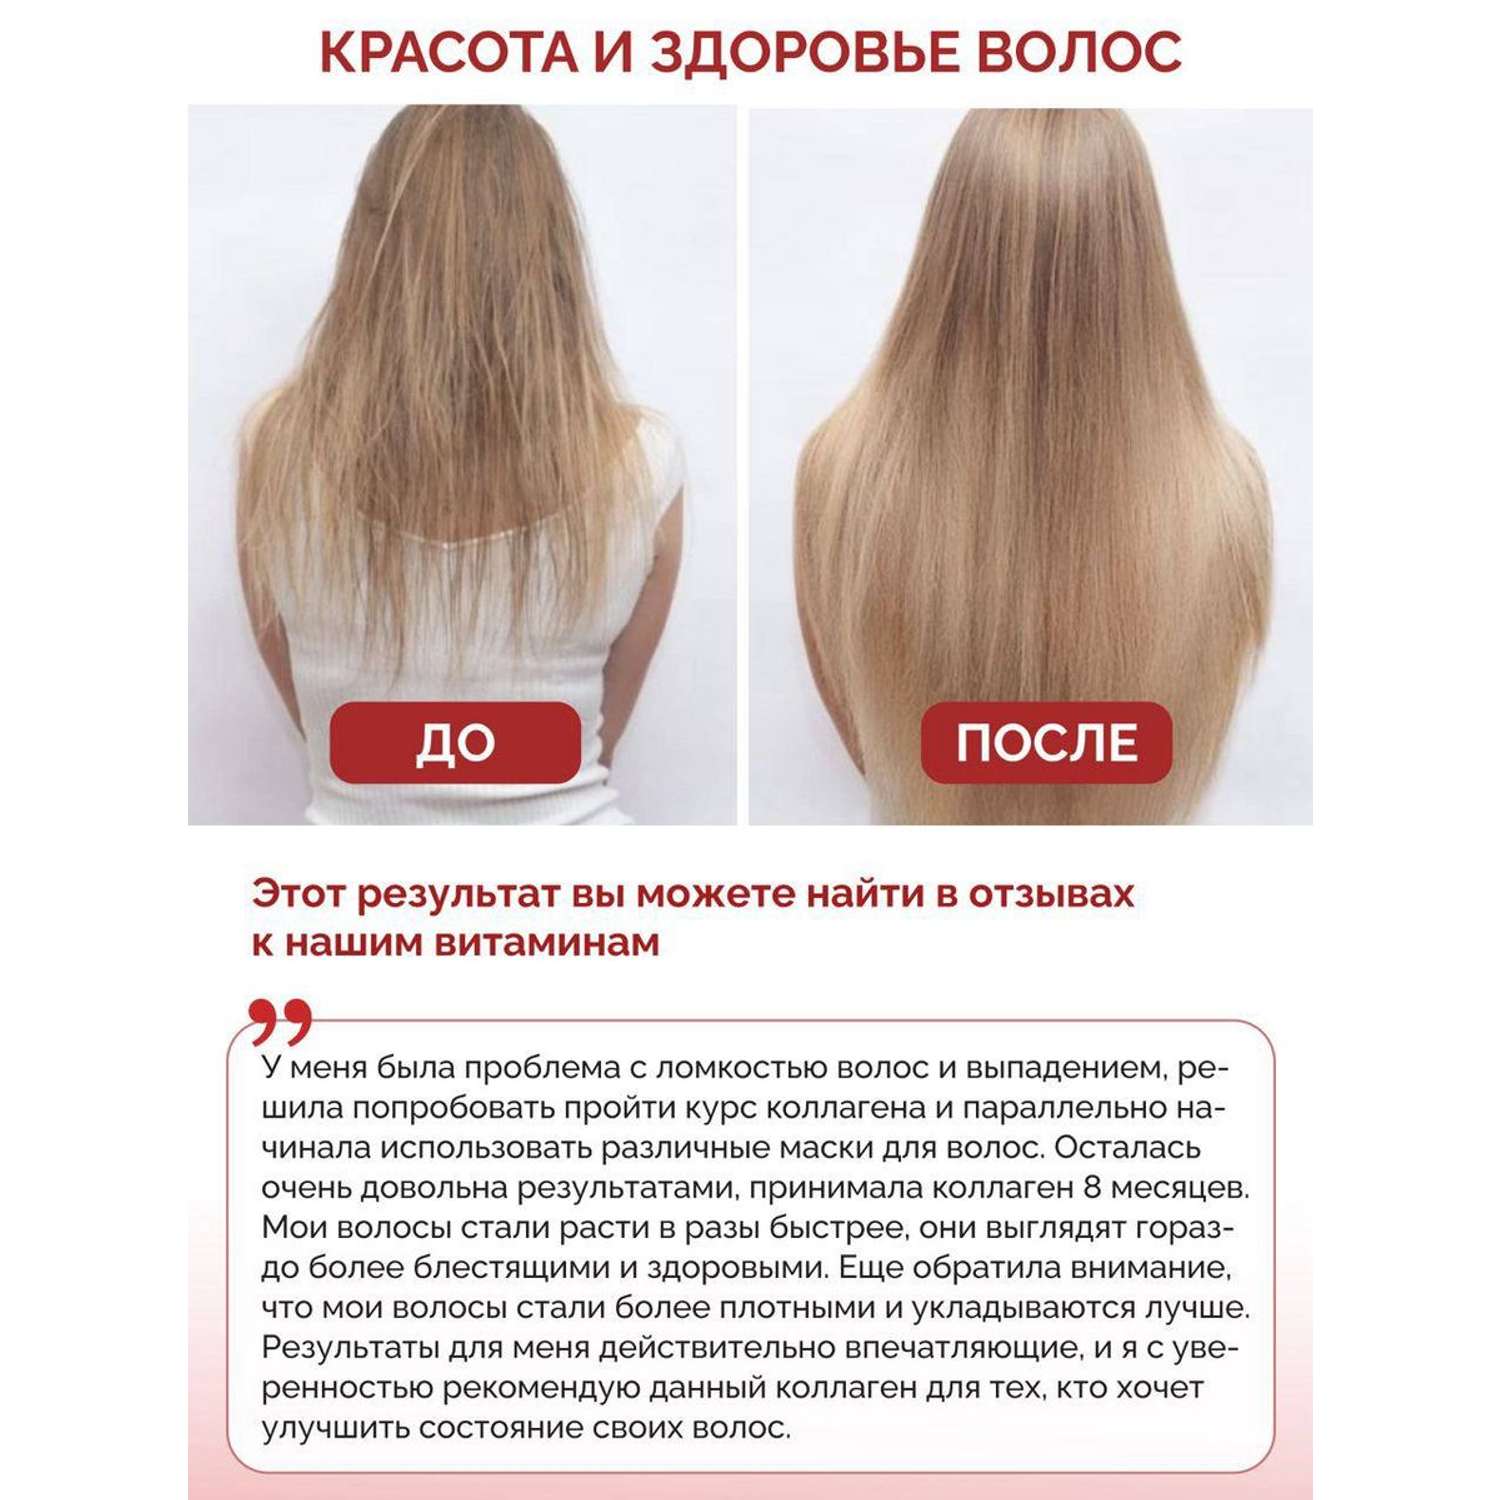 Витамины для волос кожи ногтей BIOTTE hair nails skin витаминно-минеральный комплекс БАД 60 капсул - фото 6